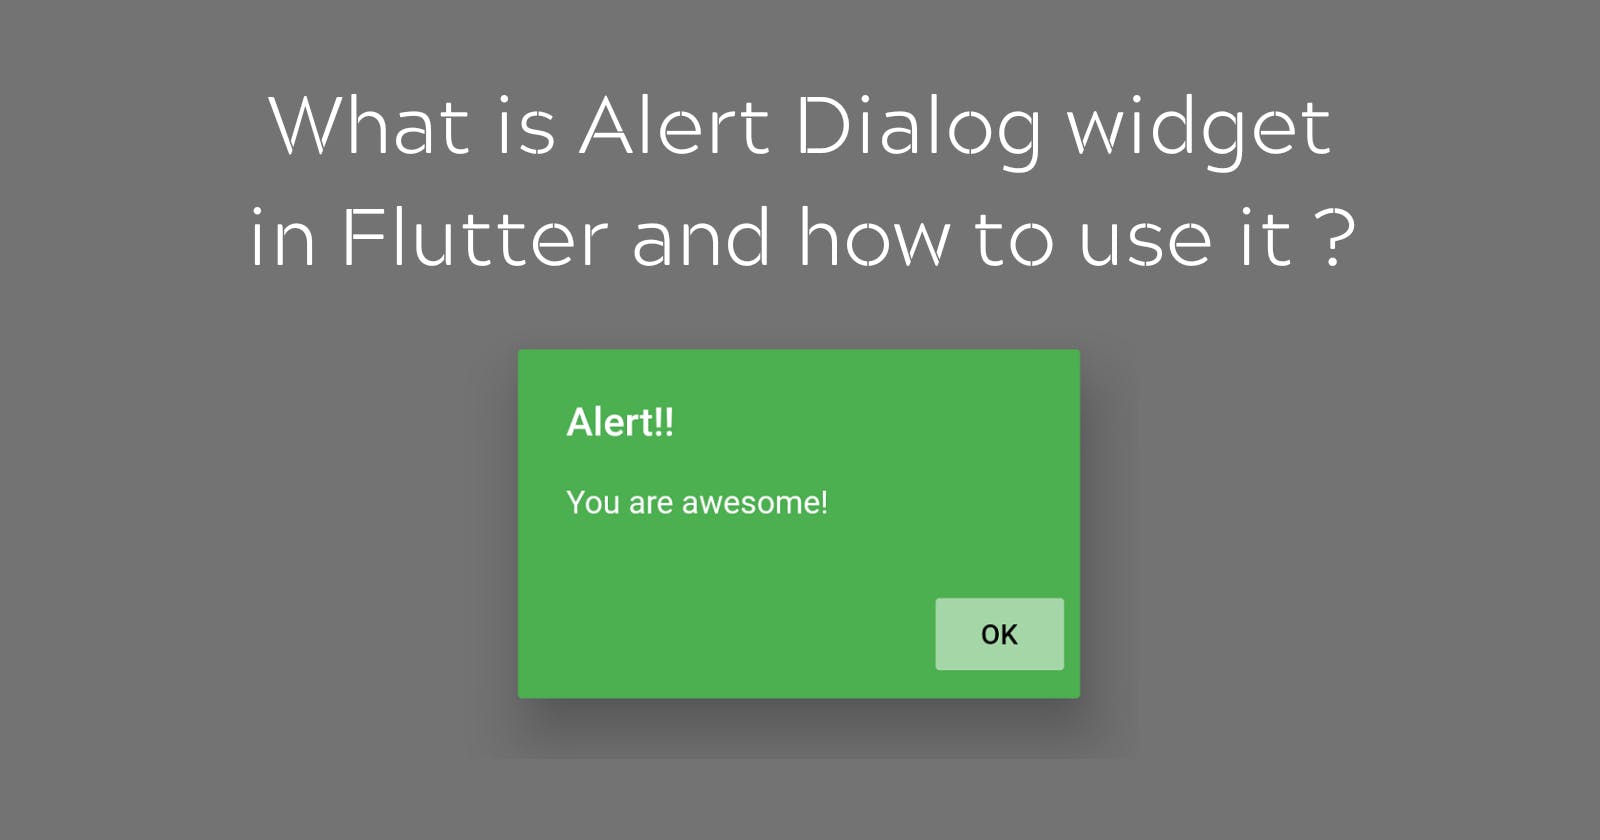 Alert Dialog widget in Flutter